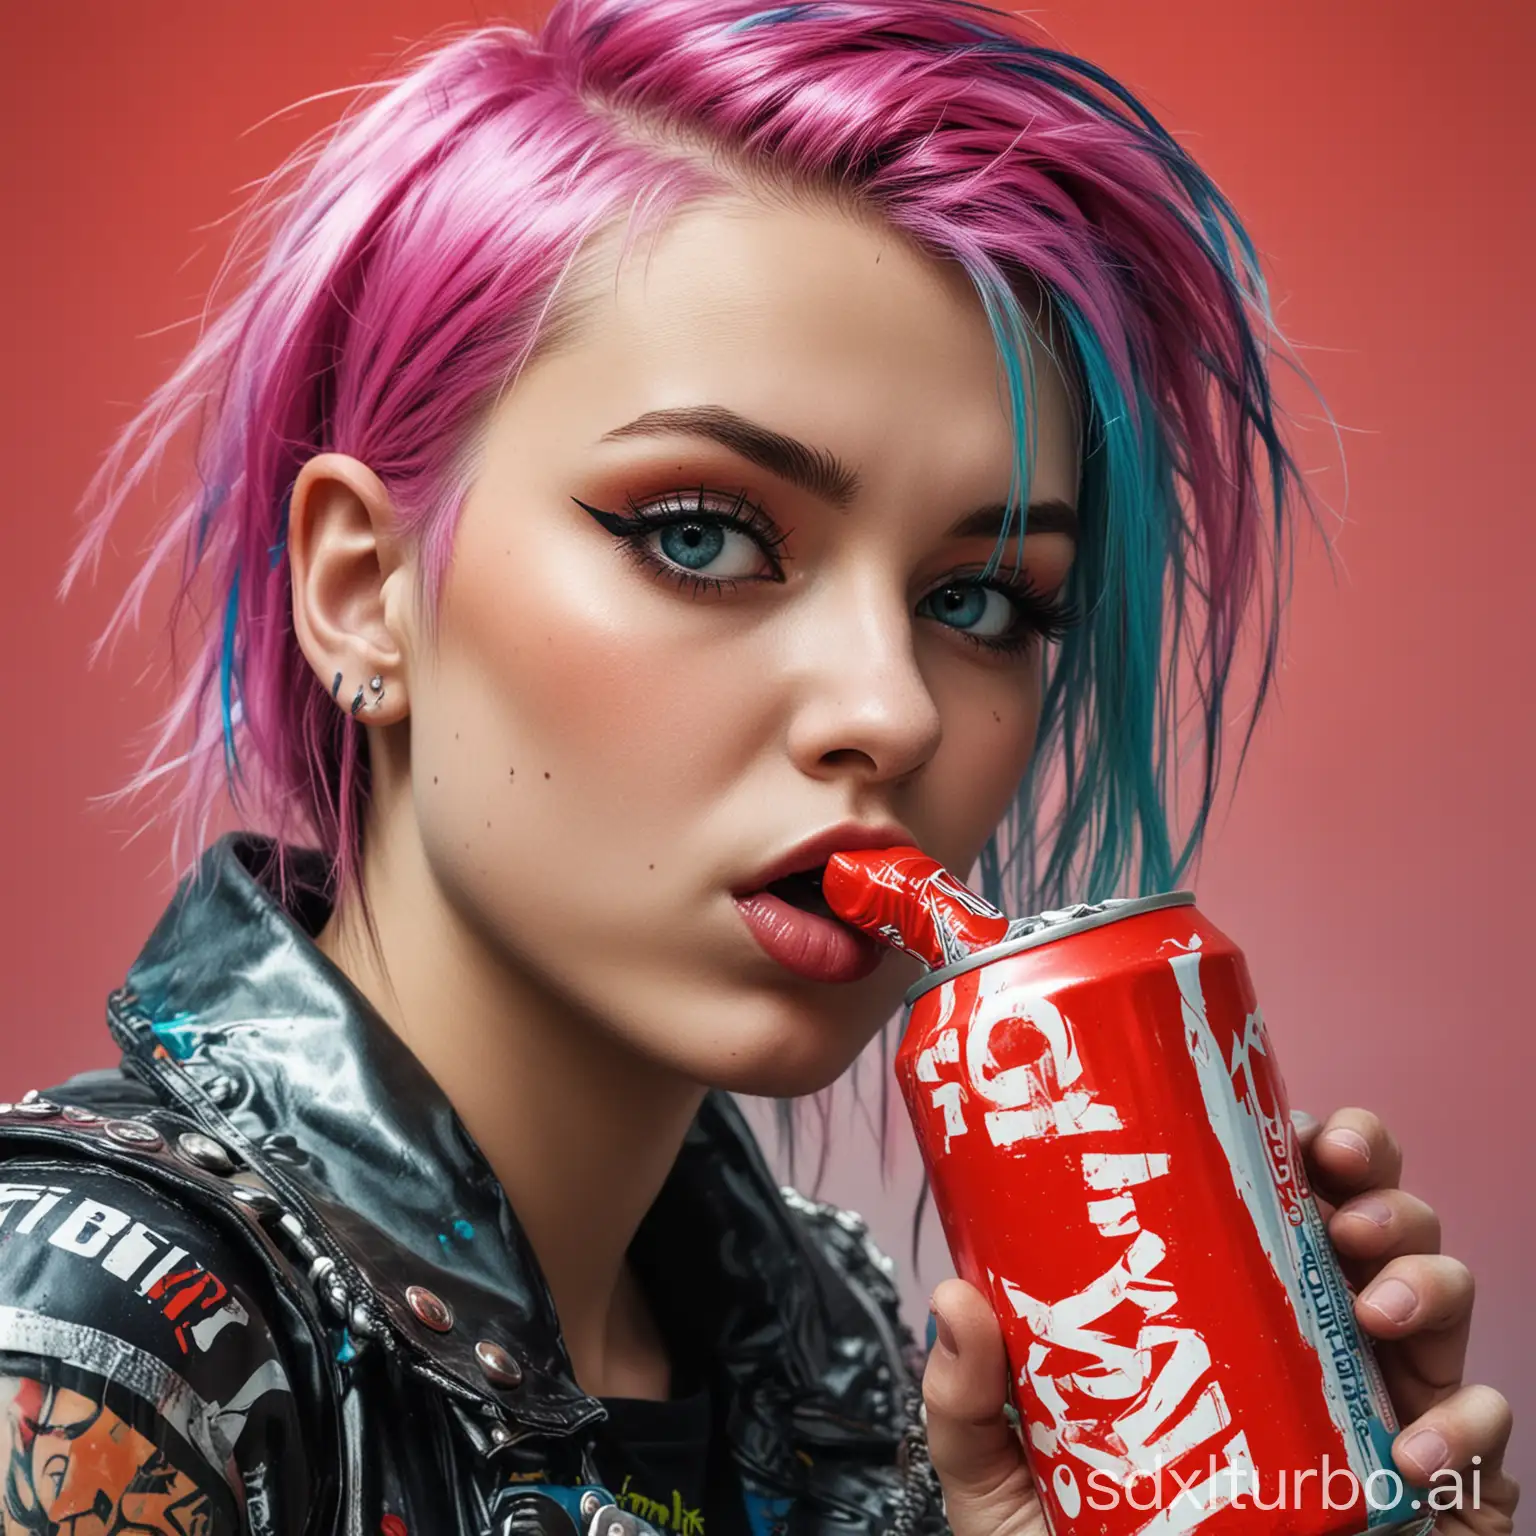 Vibrant-Polish-Punk-Girl-Enjoying-Soda